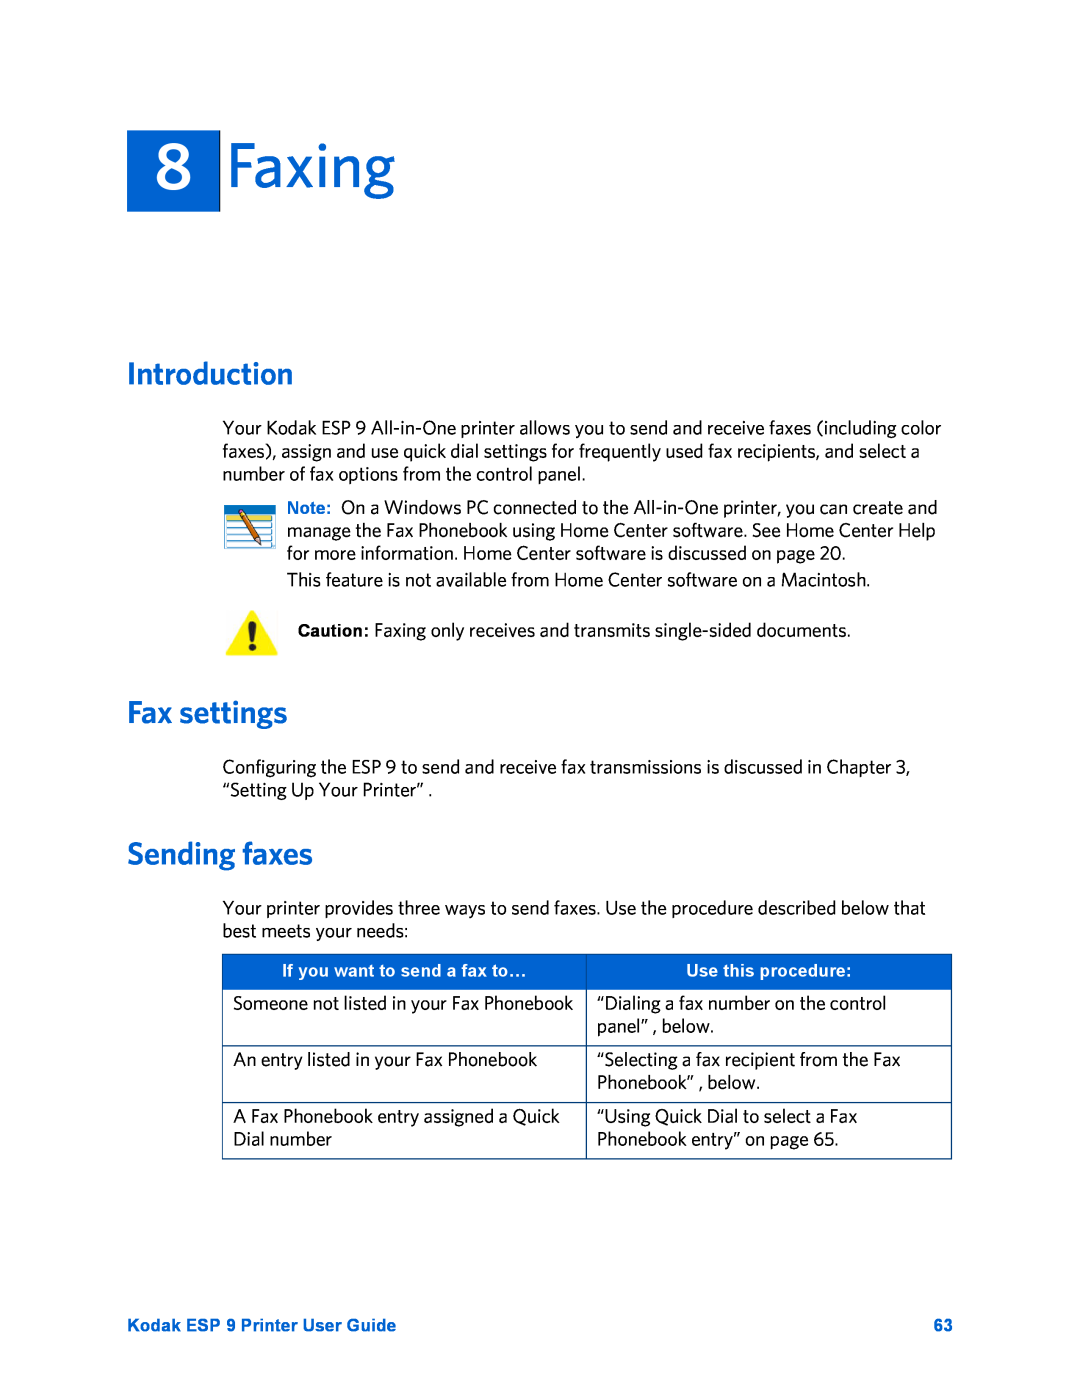 Kodak ESP 9 manual Faxing, Introduction, Fax settings, Sending faxes 